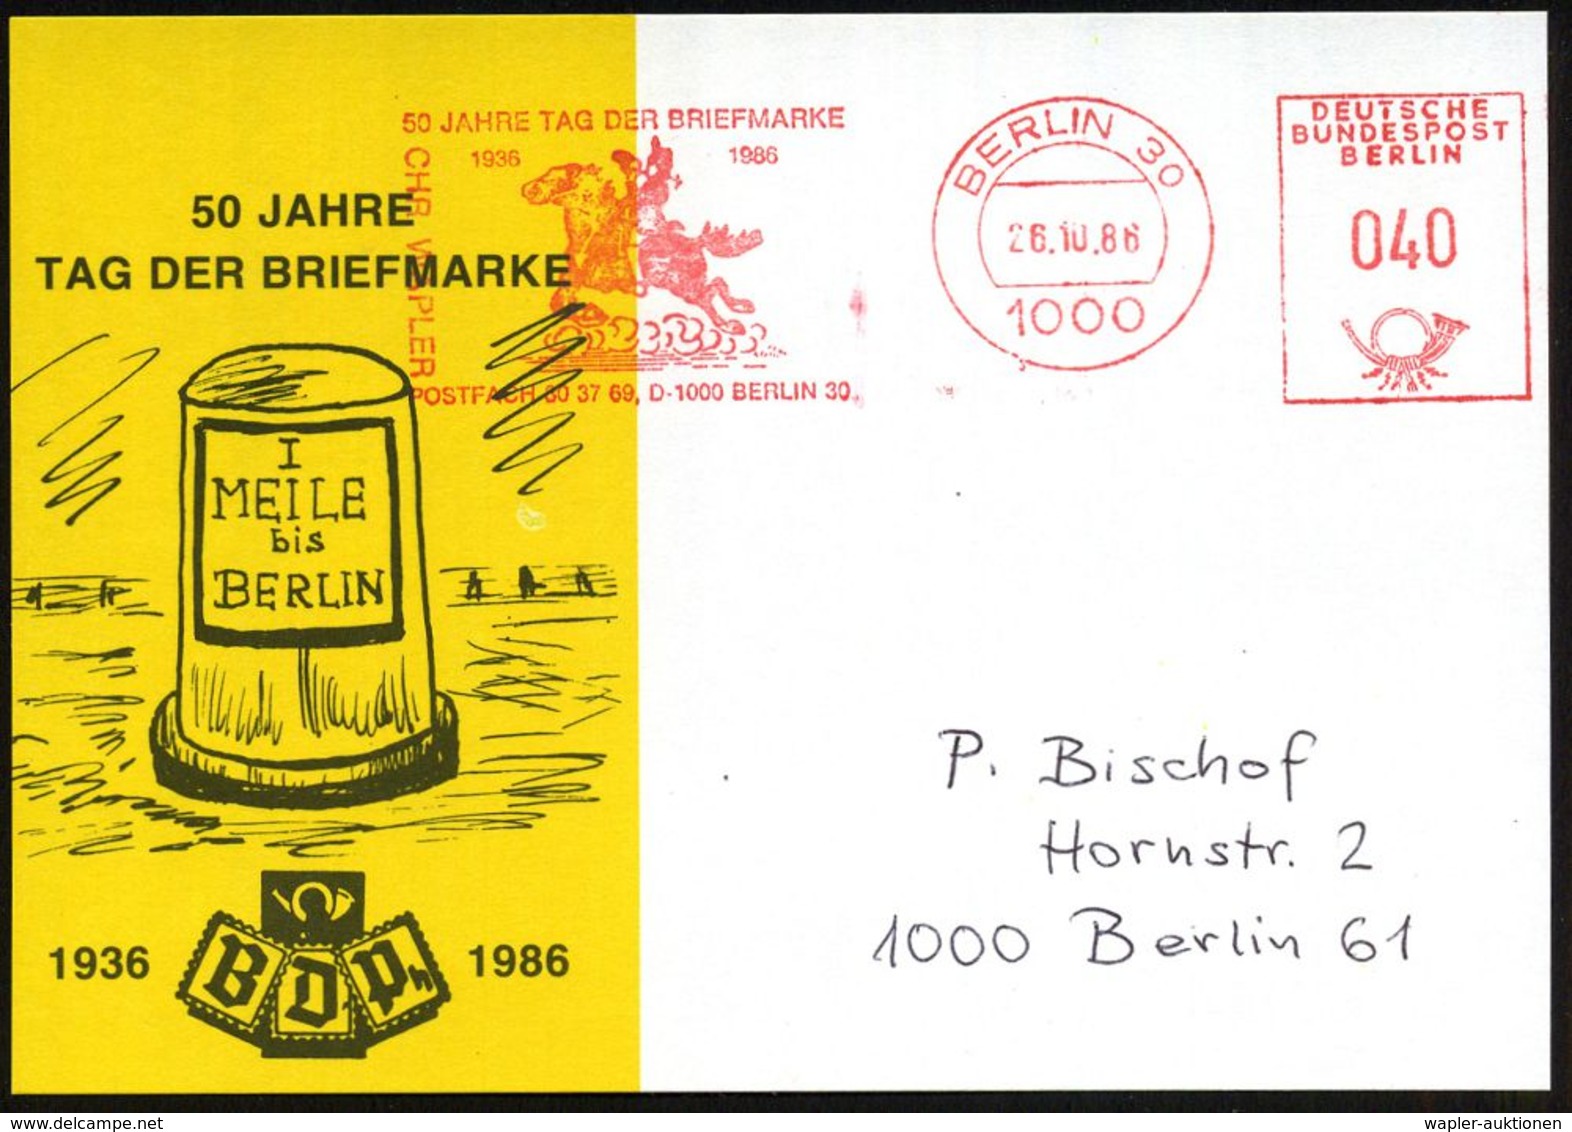 1000 BERLIN 30/ 50 JAHRE TAG DER BRIEFMARKE/ 1936.. 1986 (26.10.) AFS 040 Pf. (Postreiter) Orts-Jubil.-Sonder-Karte: 50  - Dag Van De Postzegel